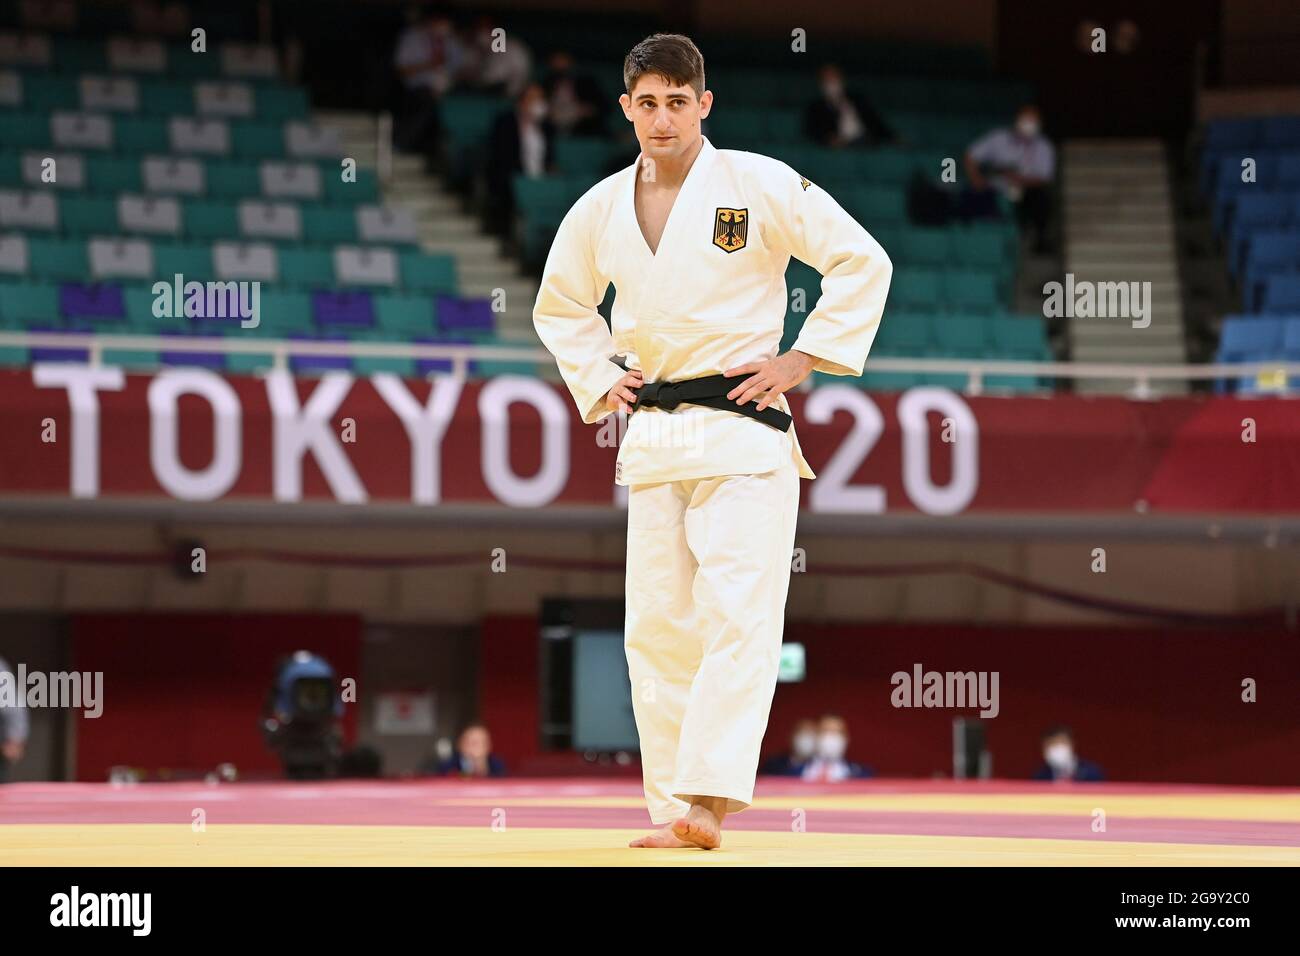 Eduard TRIPPEL (GER), Judo, Männer, Männer -90 kg, Ausscheidungsrunde am 28. Juli 2021, Nippon Budokan. Olympische Sommerspiele 2020, ab 23.07. - 08.08.2021 in Tokio/Japan. Stockfoto